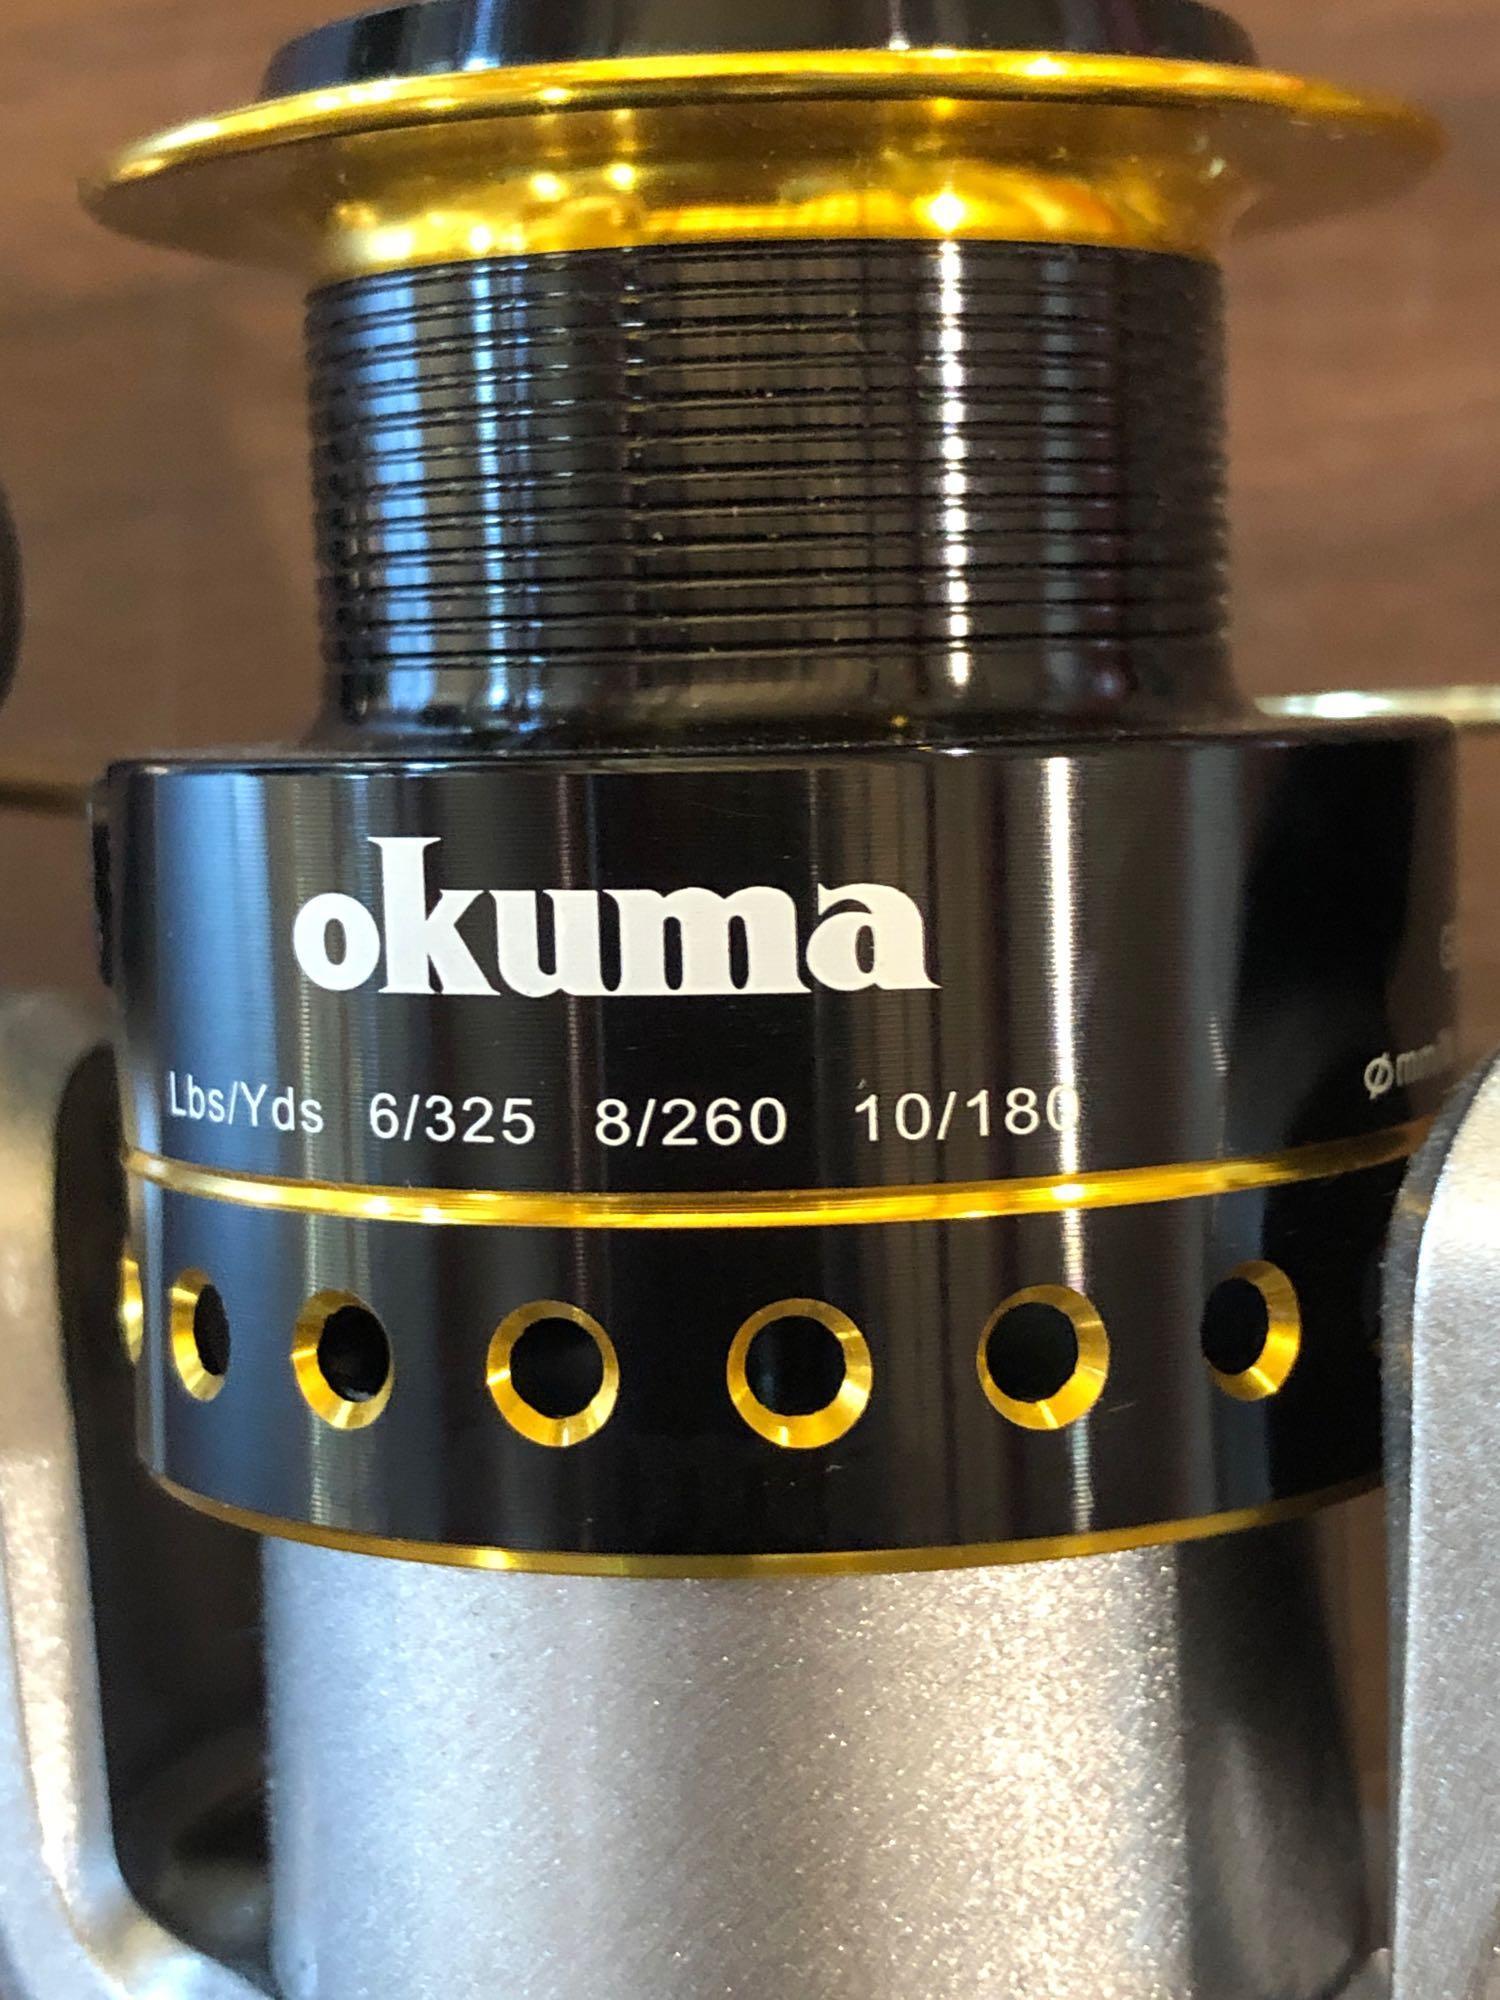 Okuma Safina Pro Spinning Reel Spa-35, $33.88